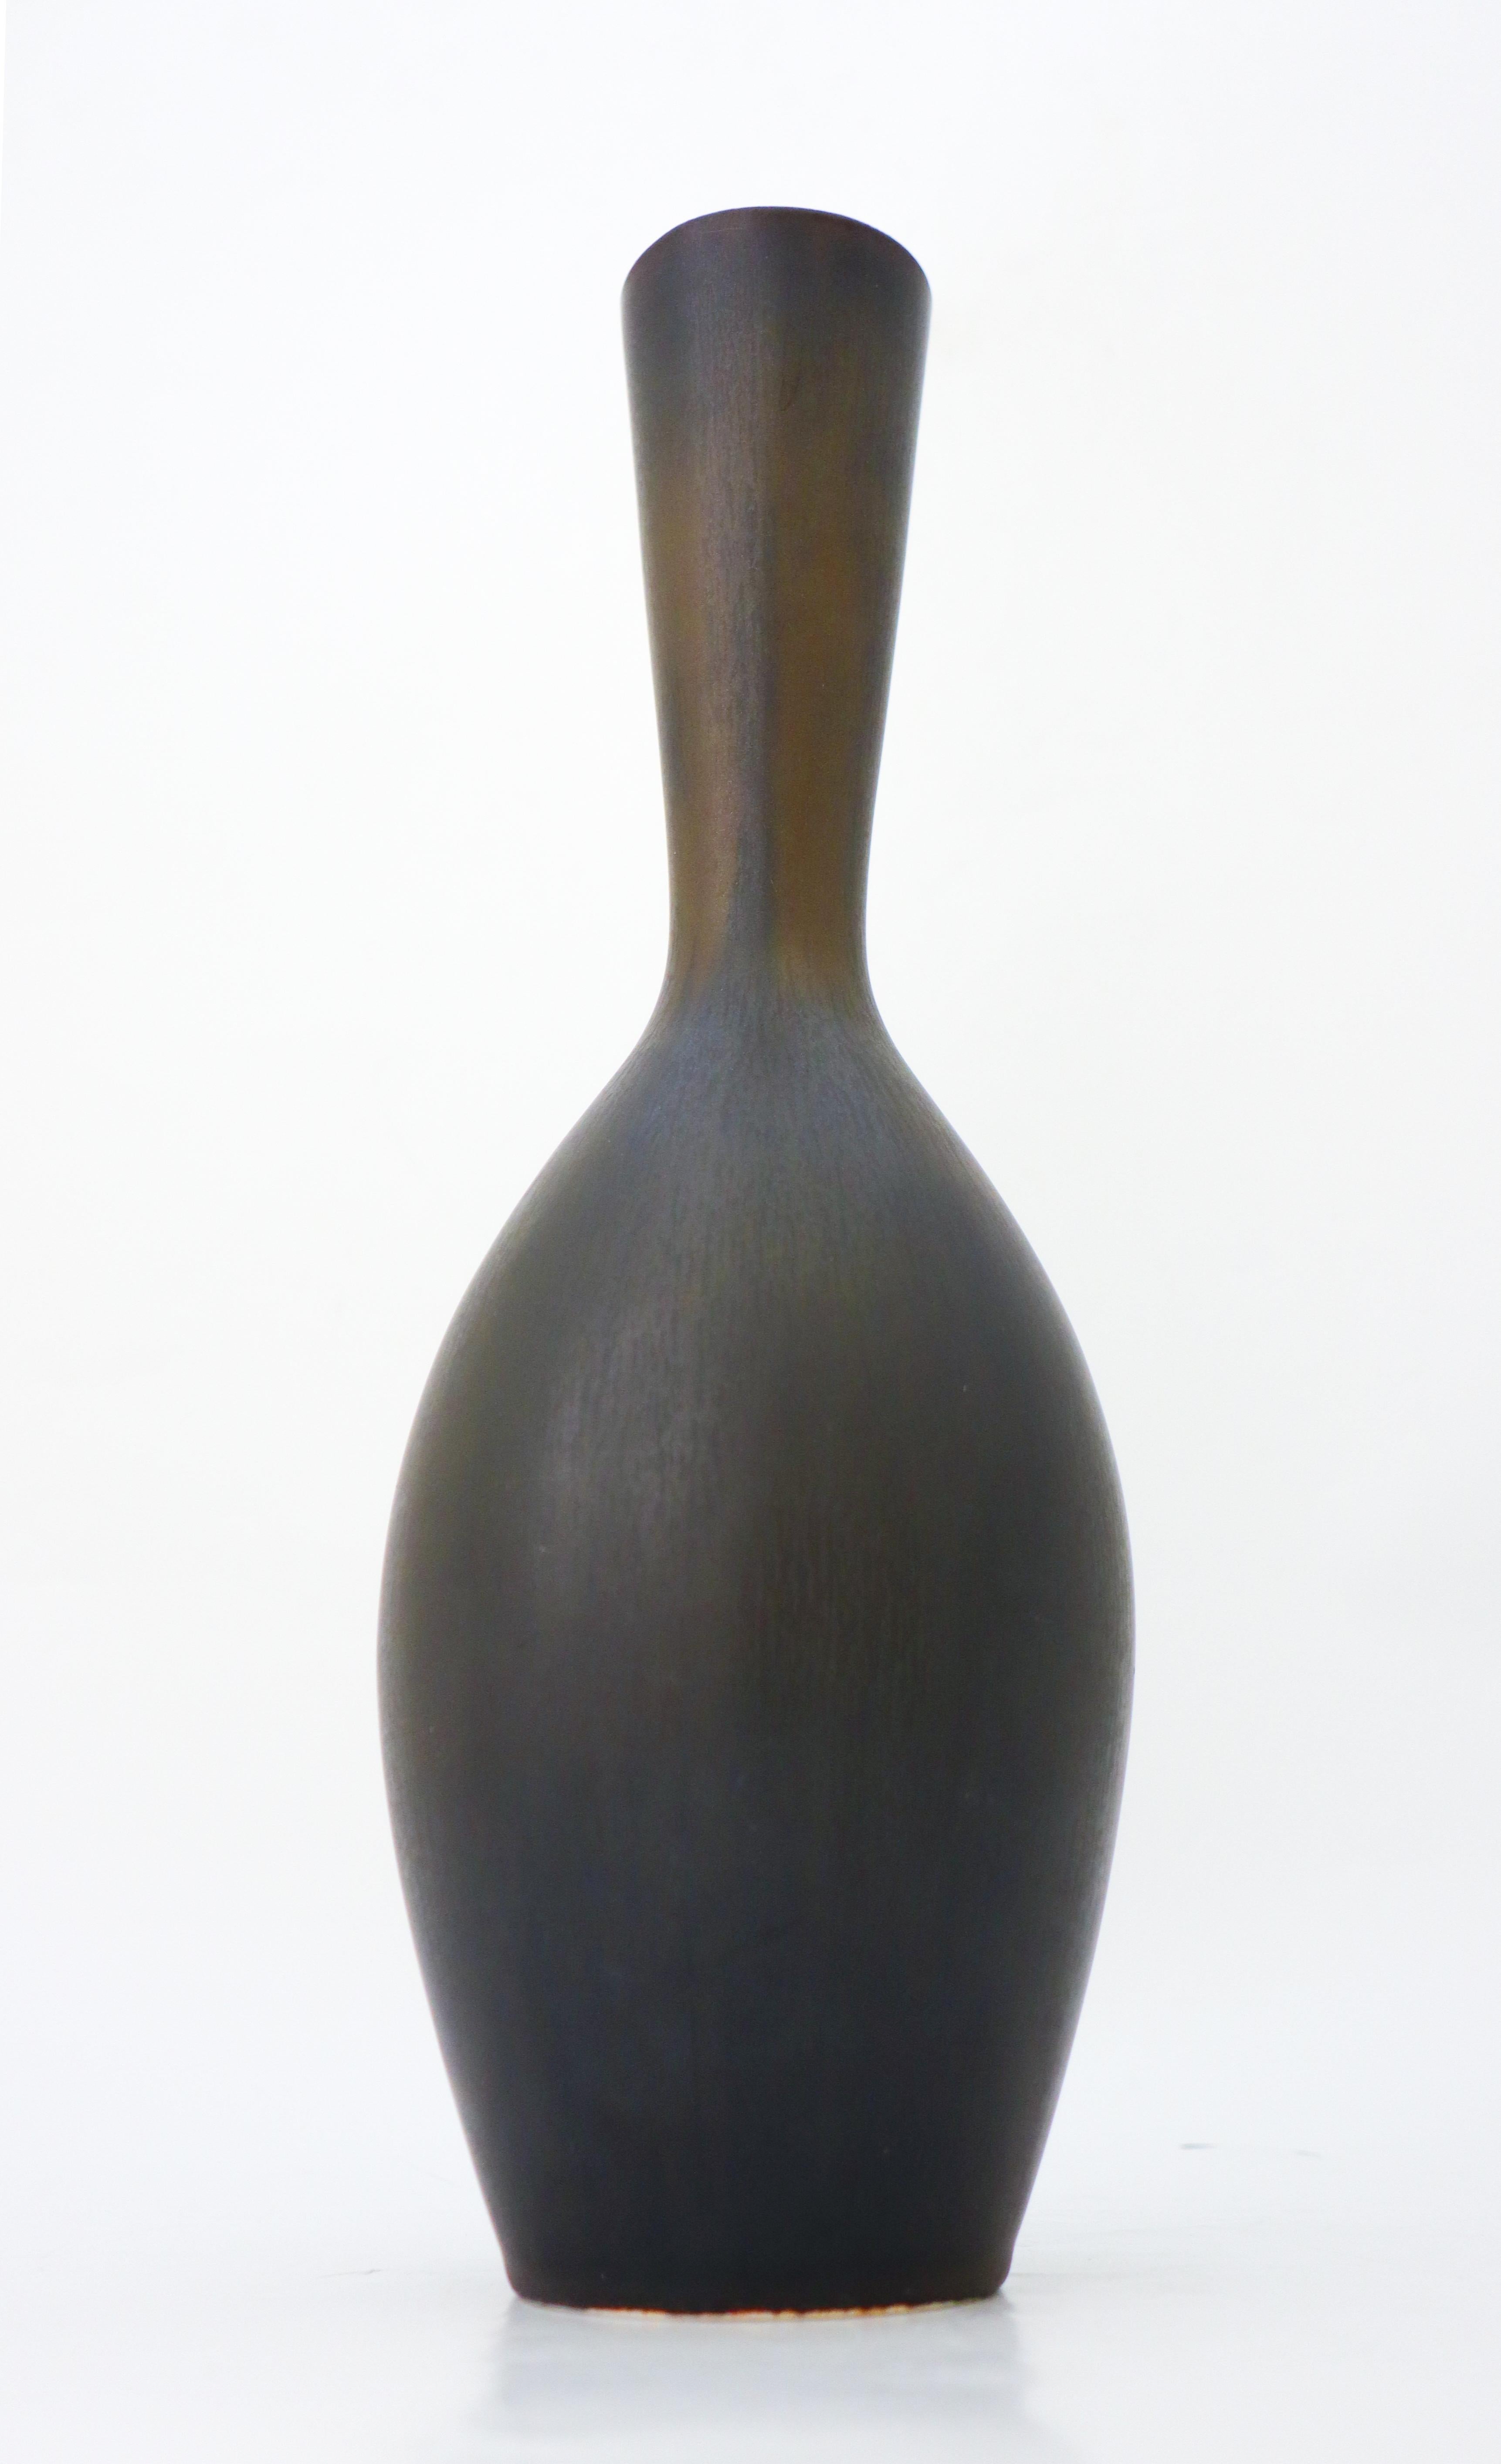 A large black vase designed by Carl-Harry Stålhane at Rörstrand. The vase is 34 cm (13.6